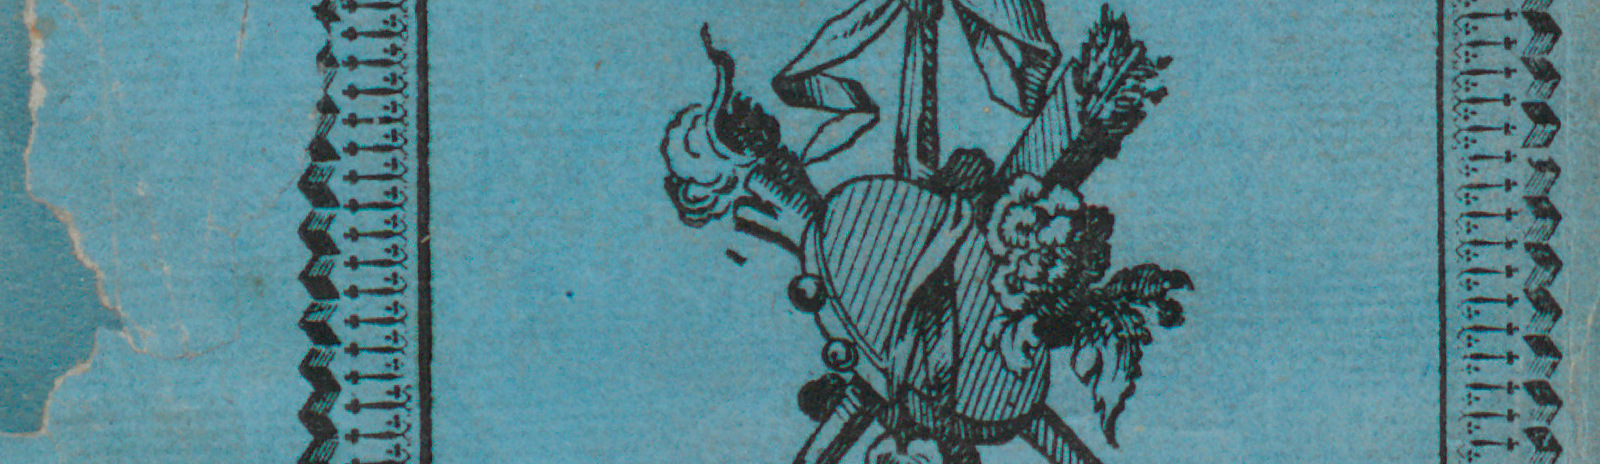 Фоновое изображение Домовой-цирюльник, или Привидение Руммельсбургского замка